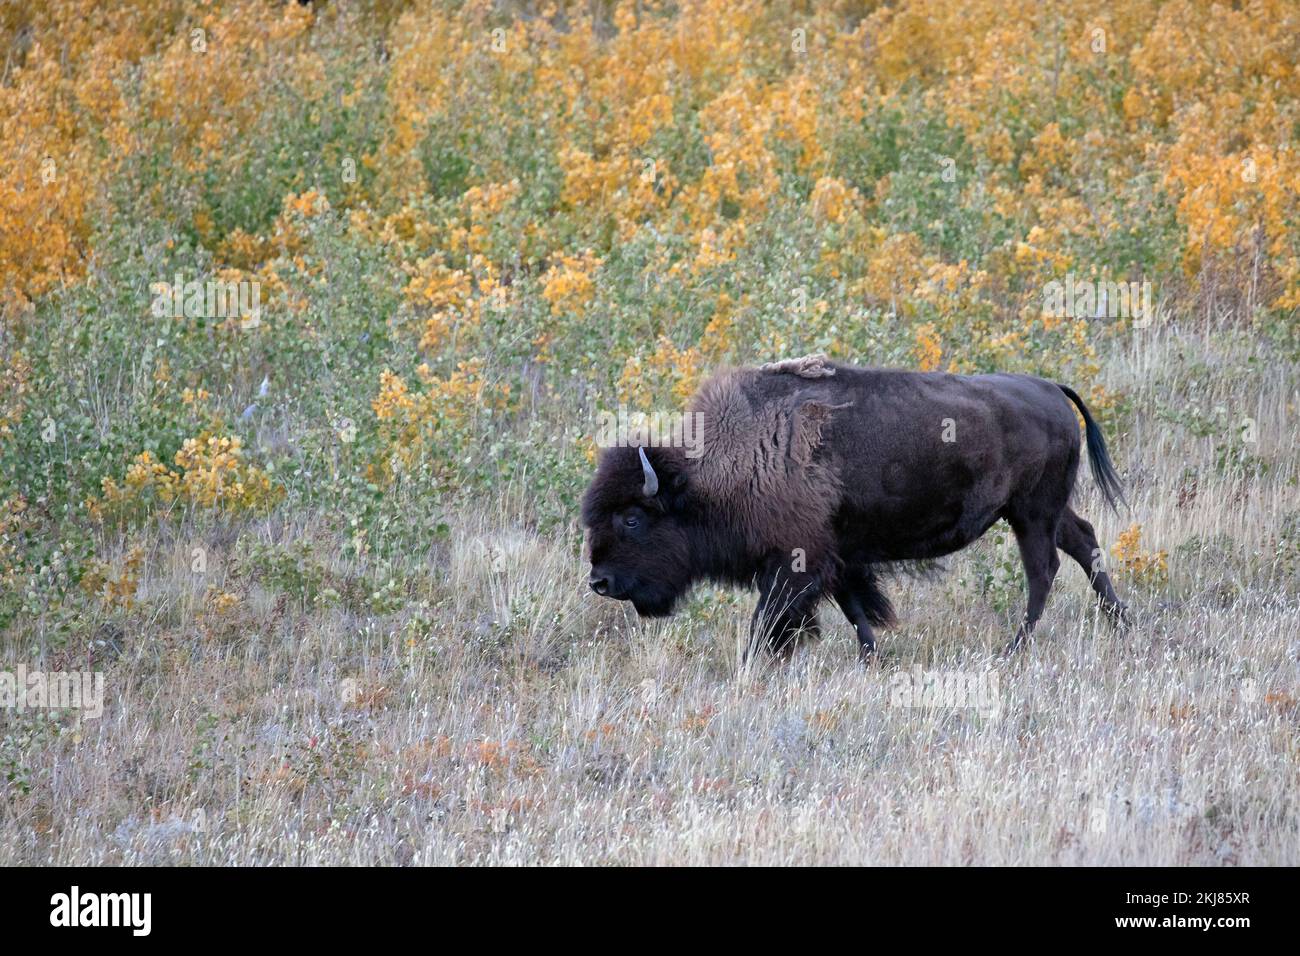 Bison des prairies femelle marchant dans le prublot de peupliers des Prairies dans le parc national des Lacs-Waterton, Canada (Bison bison) Banque D'Images